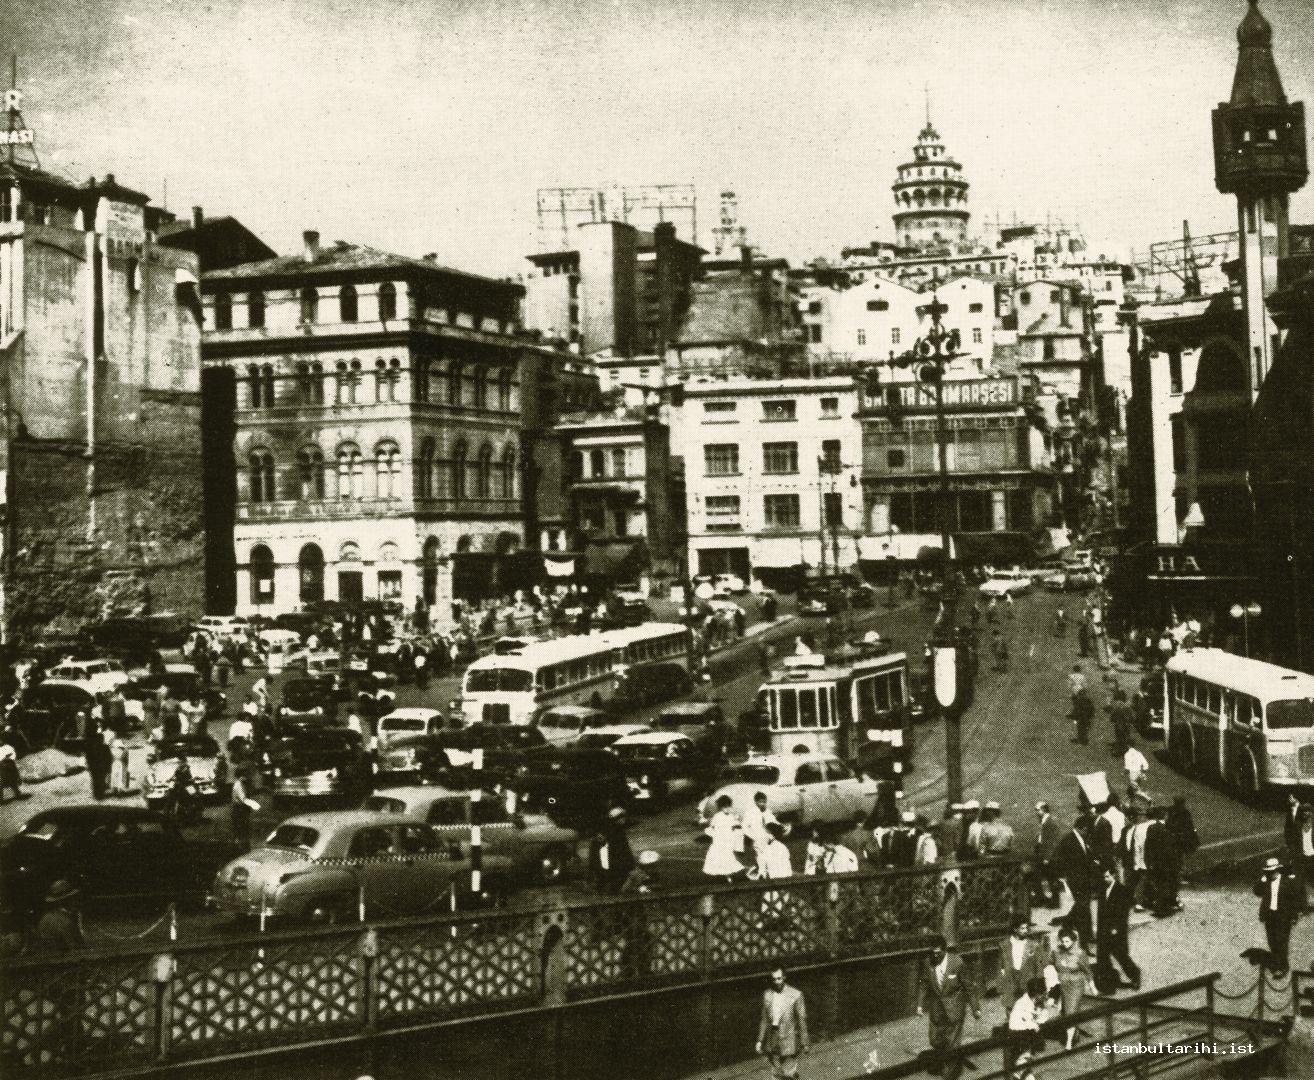 17- “Karaköy’de meydan açılışının ilk safhasını yukarıdaki resimde görüyoruz.
            Bu meydan daha da genişletilecek ve tanzim olunarak hem şehrin denizden
            giriş kapısında güzel bir süs, hem de Beyoğlu ve karşı yaka trafiğinin rahat
            akabileceği bir geçit olacaktır”